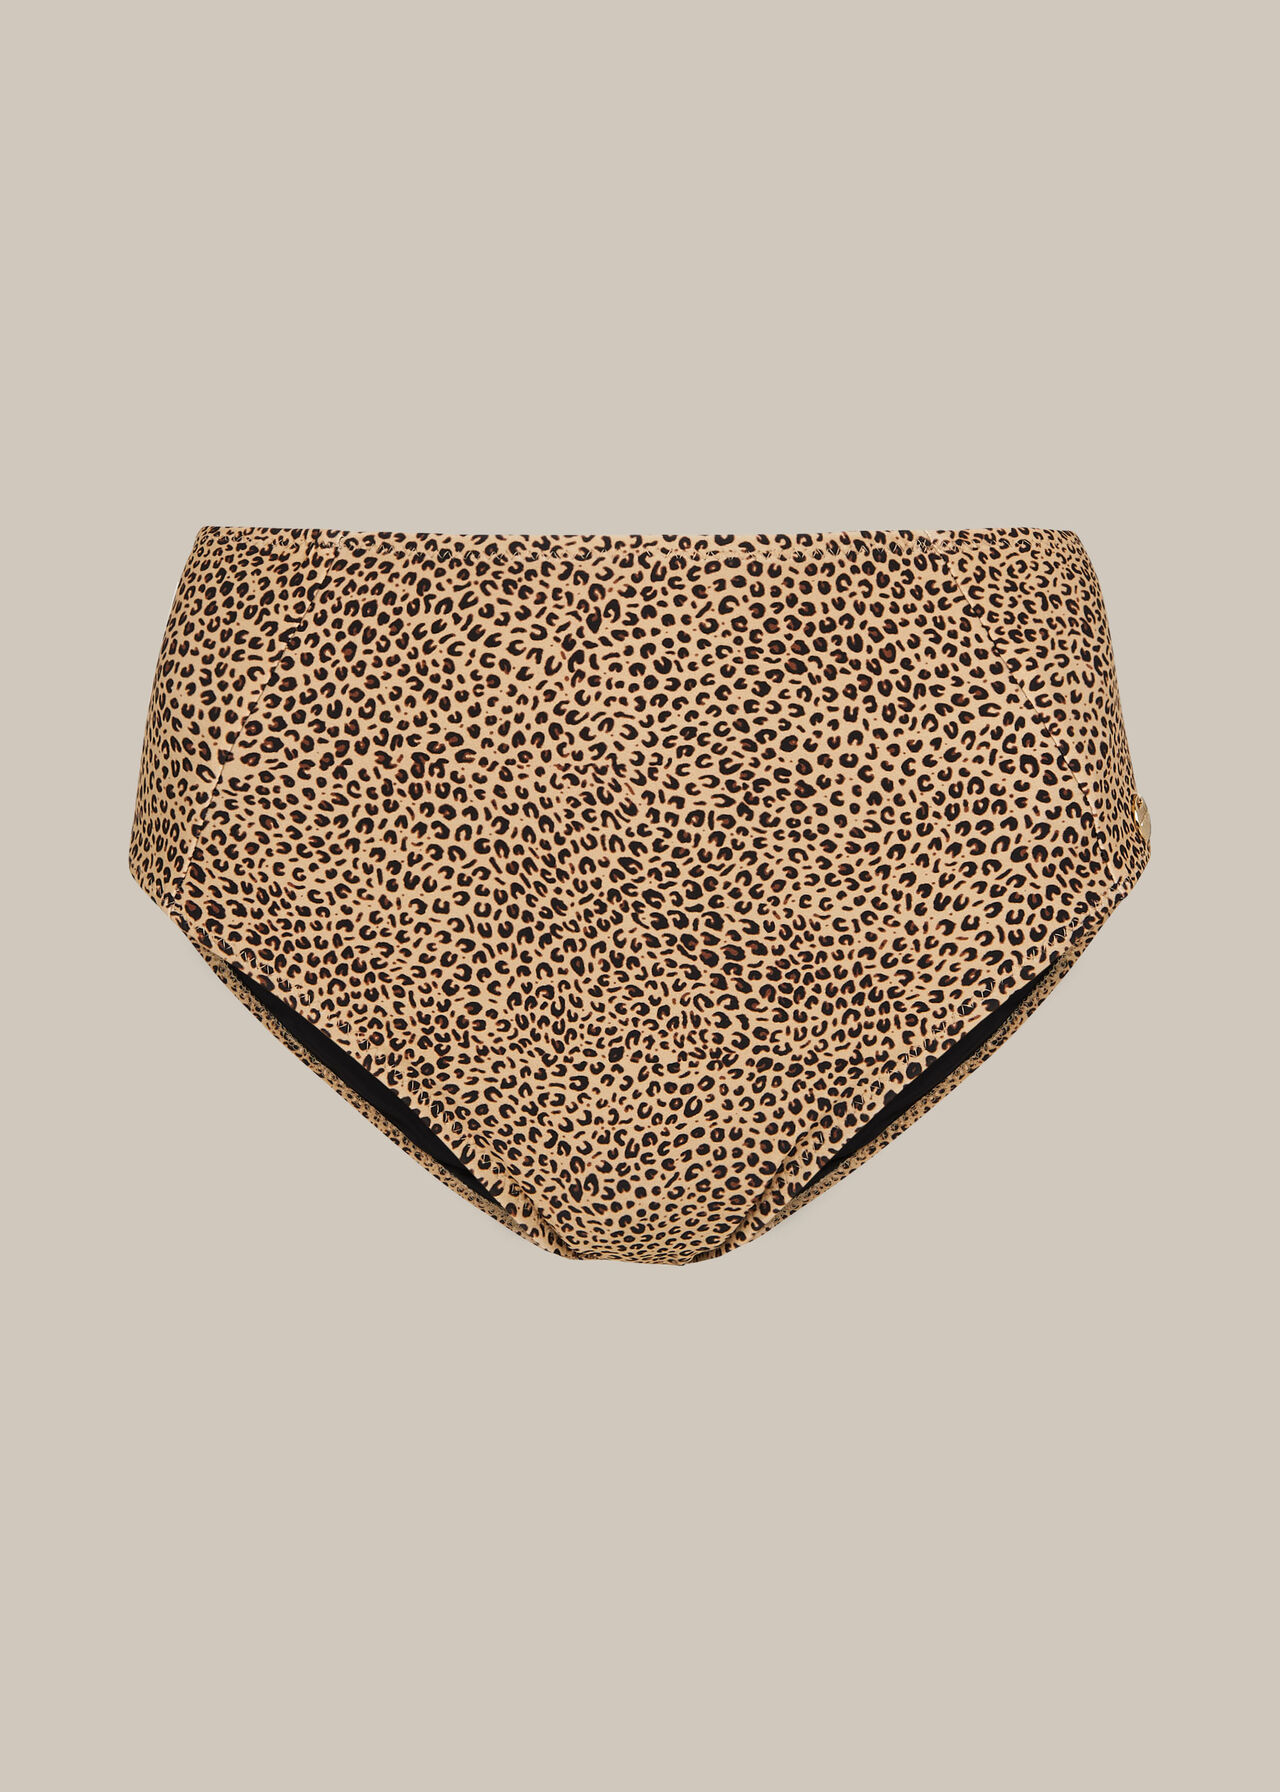 Mini Leopard Bikini Bottom Leopard Print